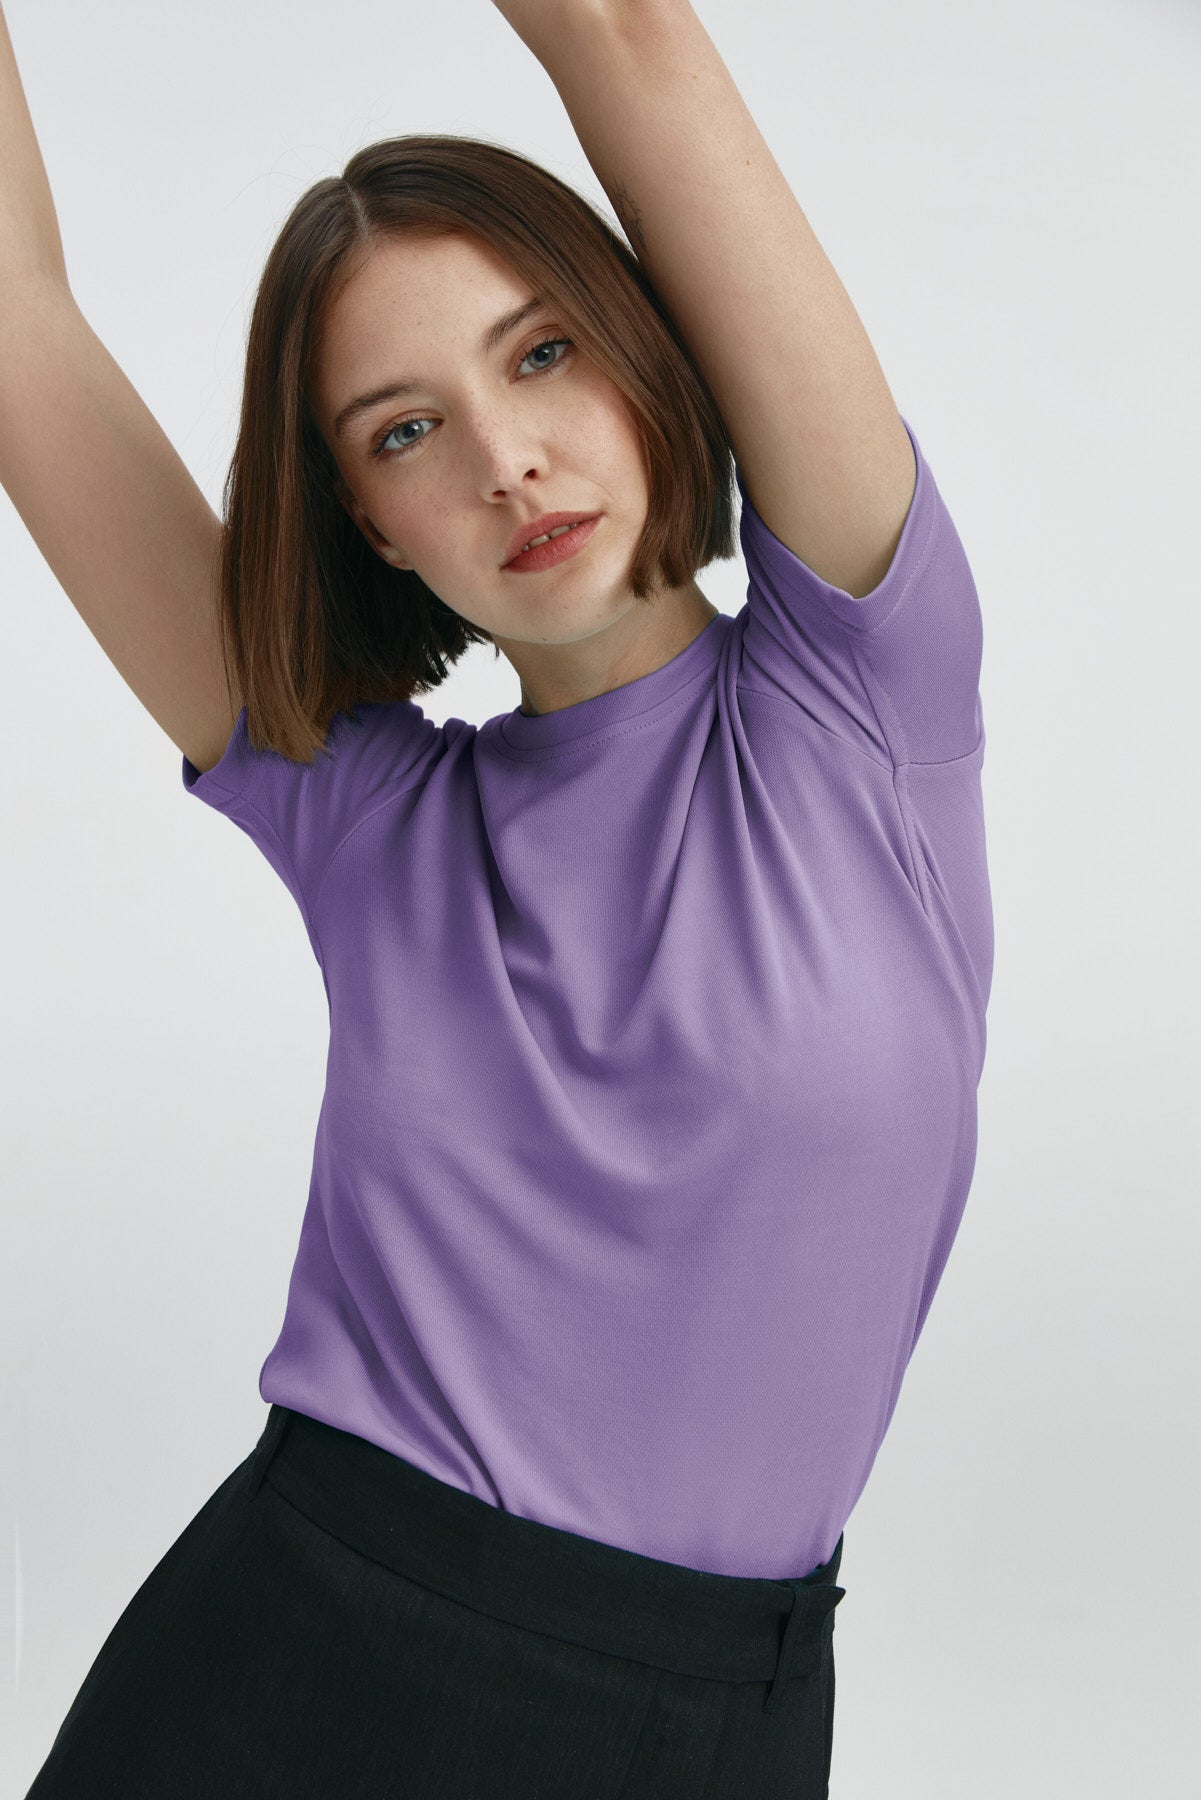 Camiseta básica para mujer sin arrugas ni manchas. Manga corta, antiarrugas y antimanchas. Foto flexibilidad